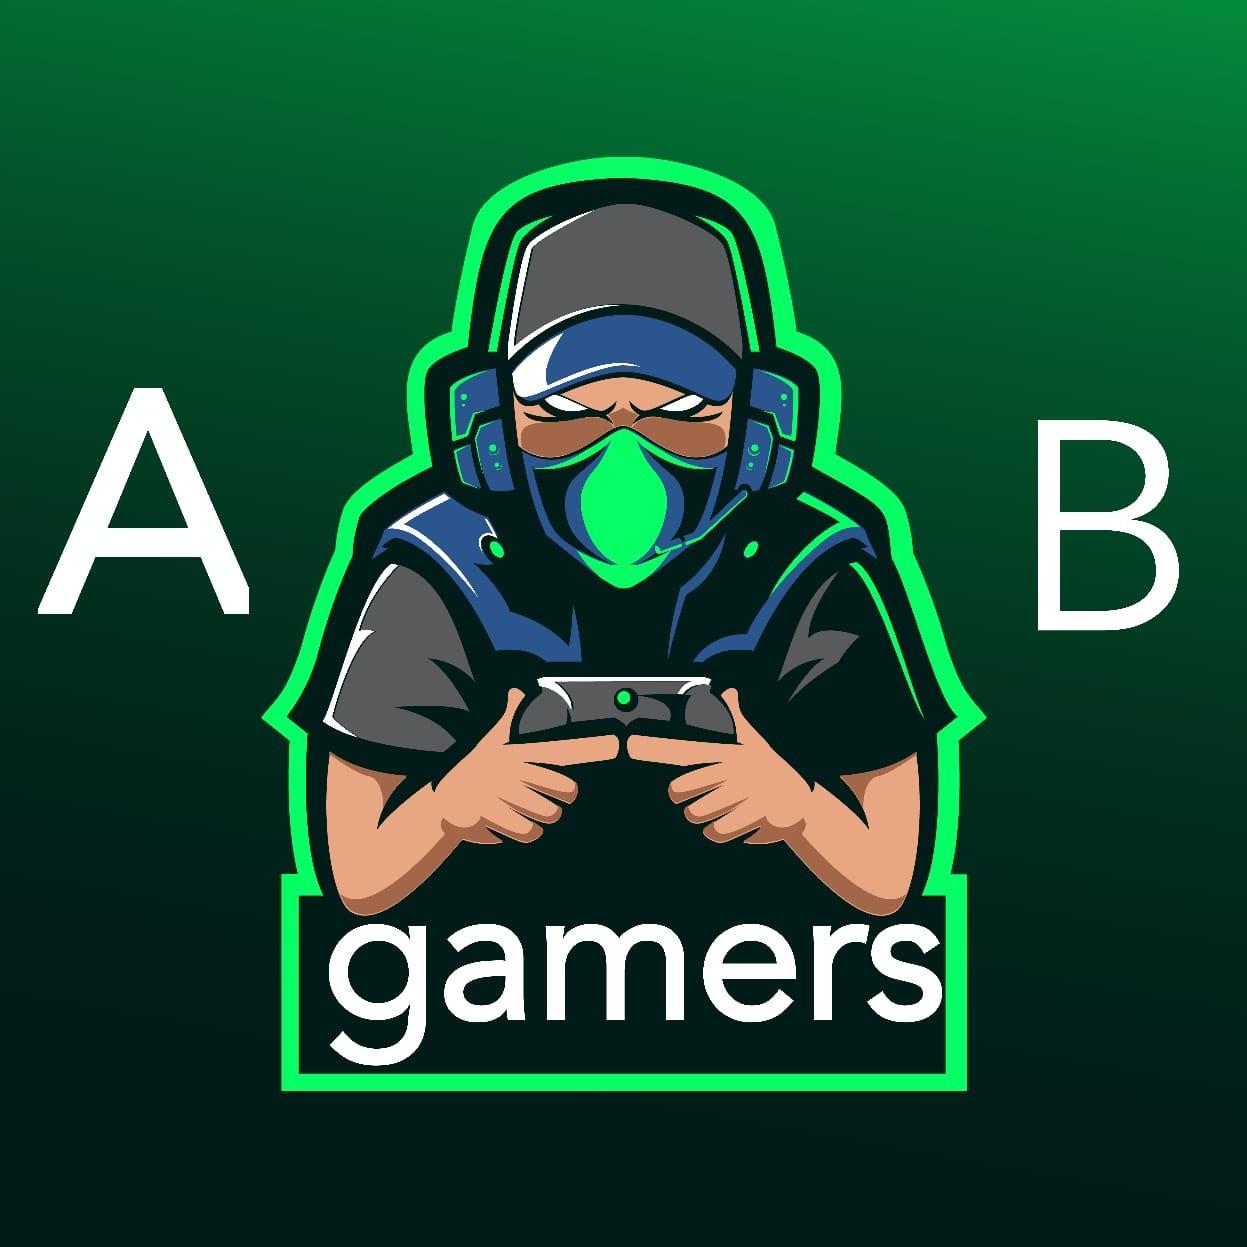 Ab gamer